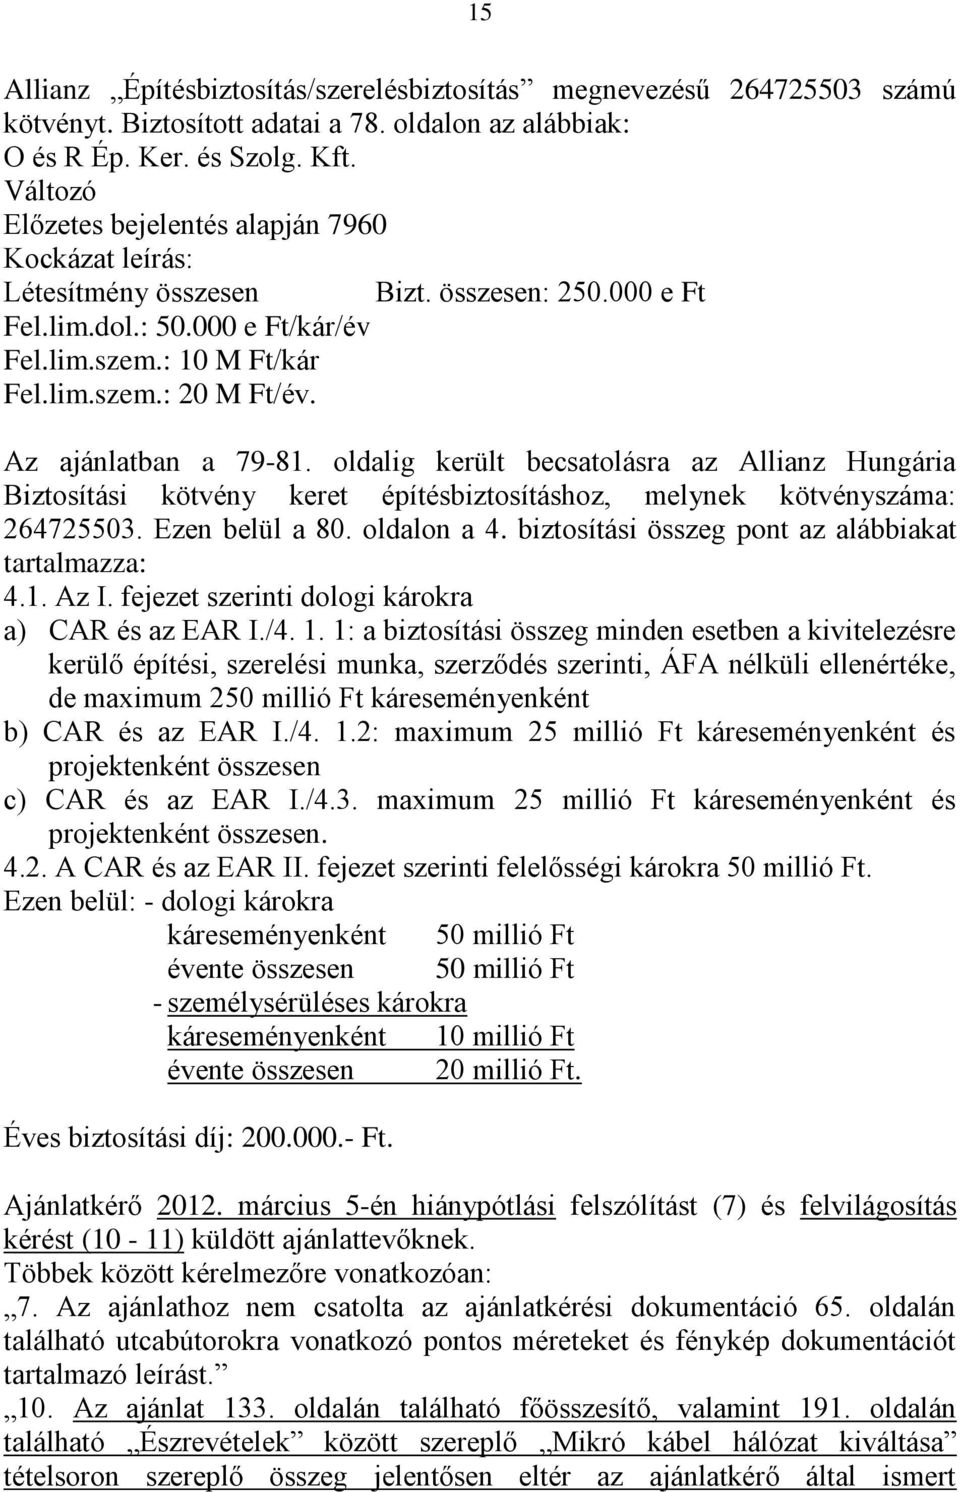 Az ajánlatban a 79-81. oldalig került becsatolásra az Allianz Hungária Biztosítási kötvény keret építésbiztosításhoz, melynek kötvényszáma: 264725503. Ezen belül a 80. oldalon a 4.